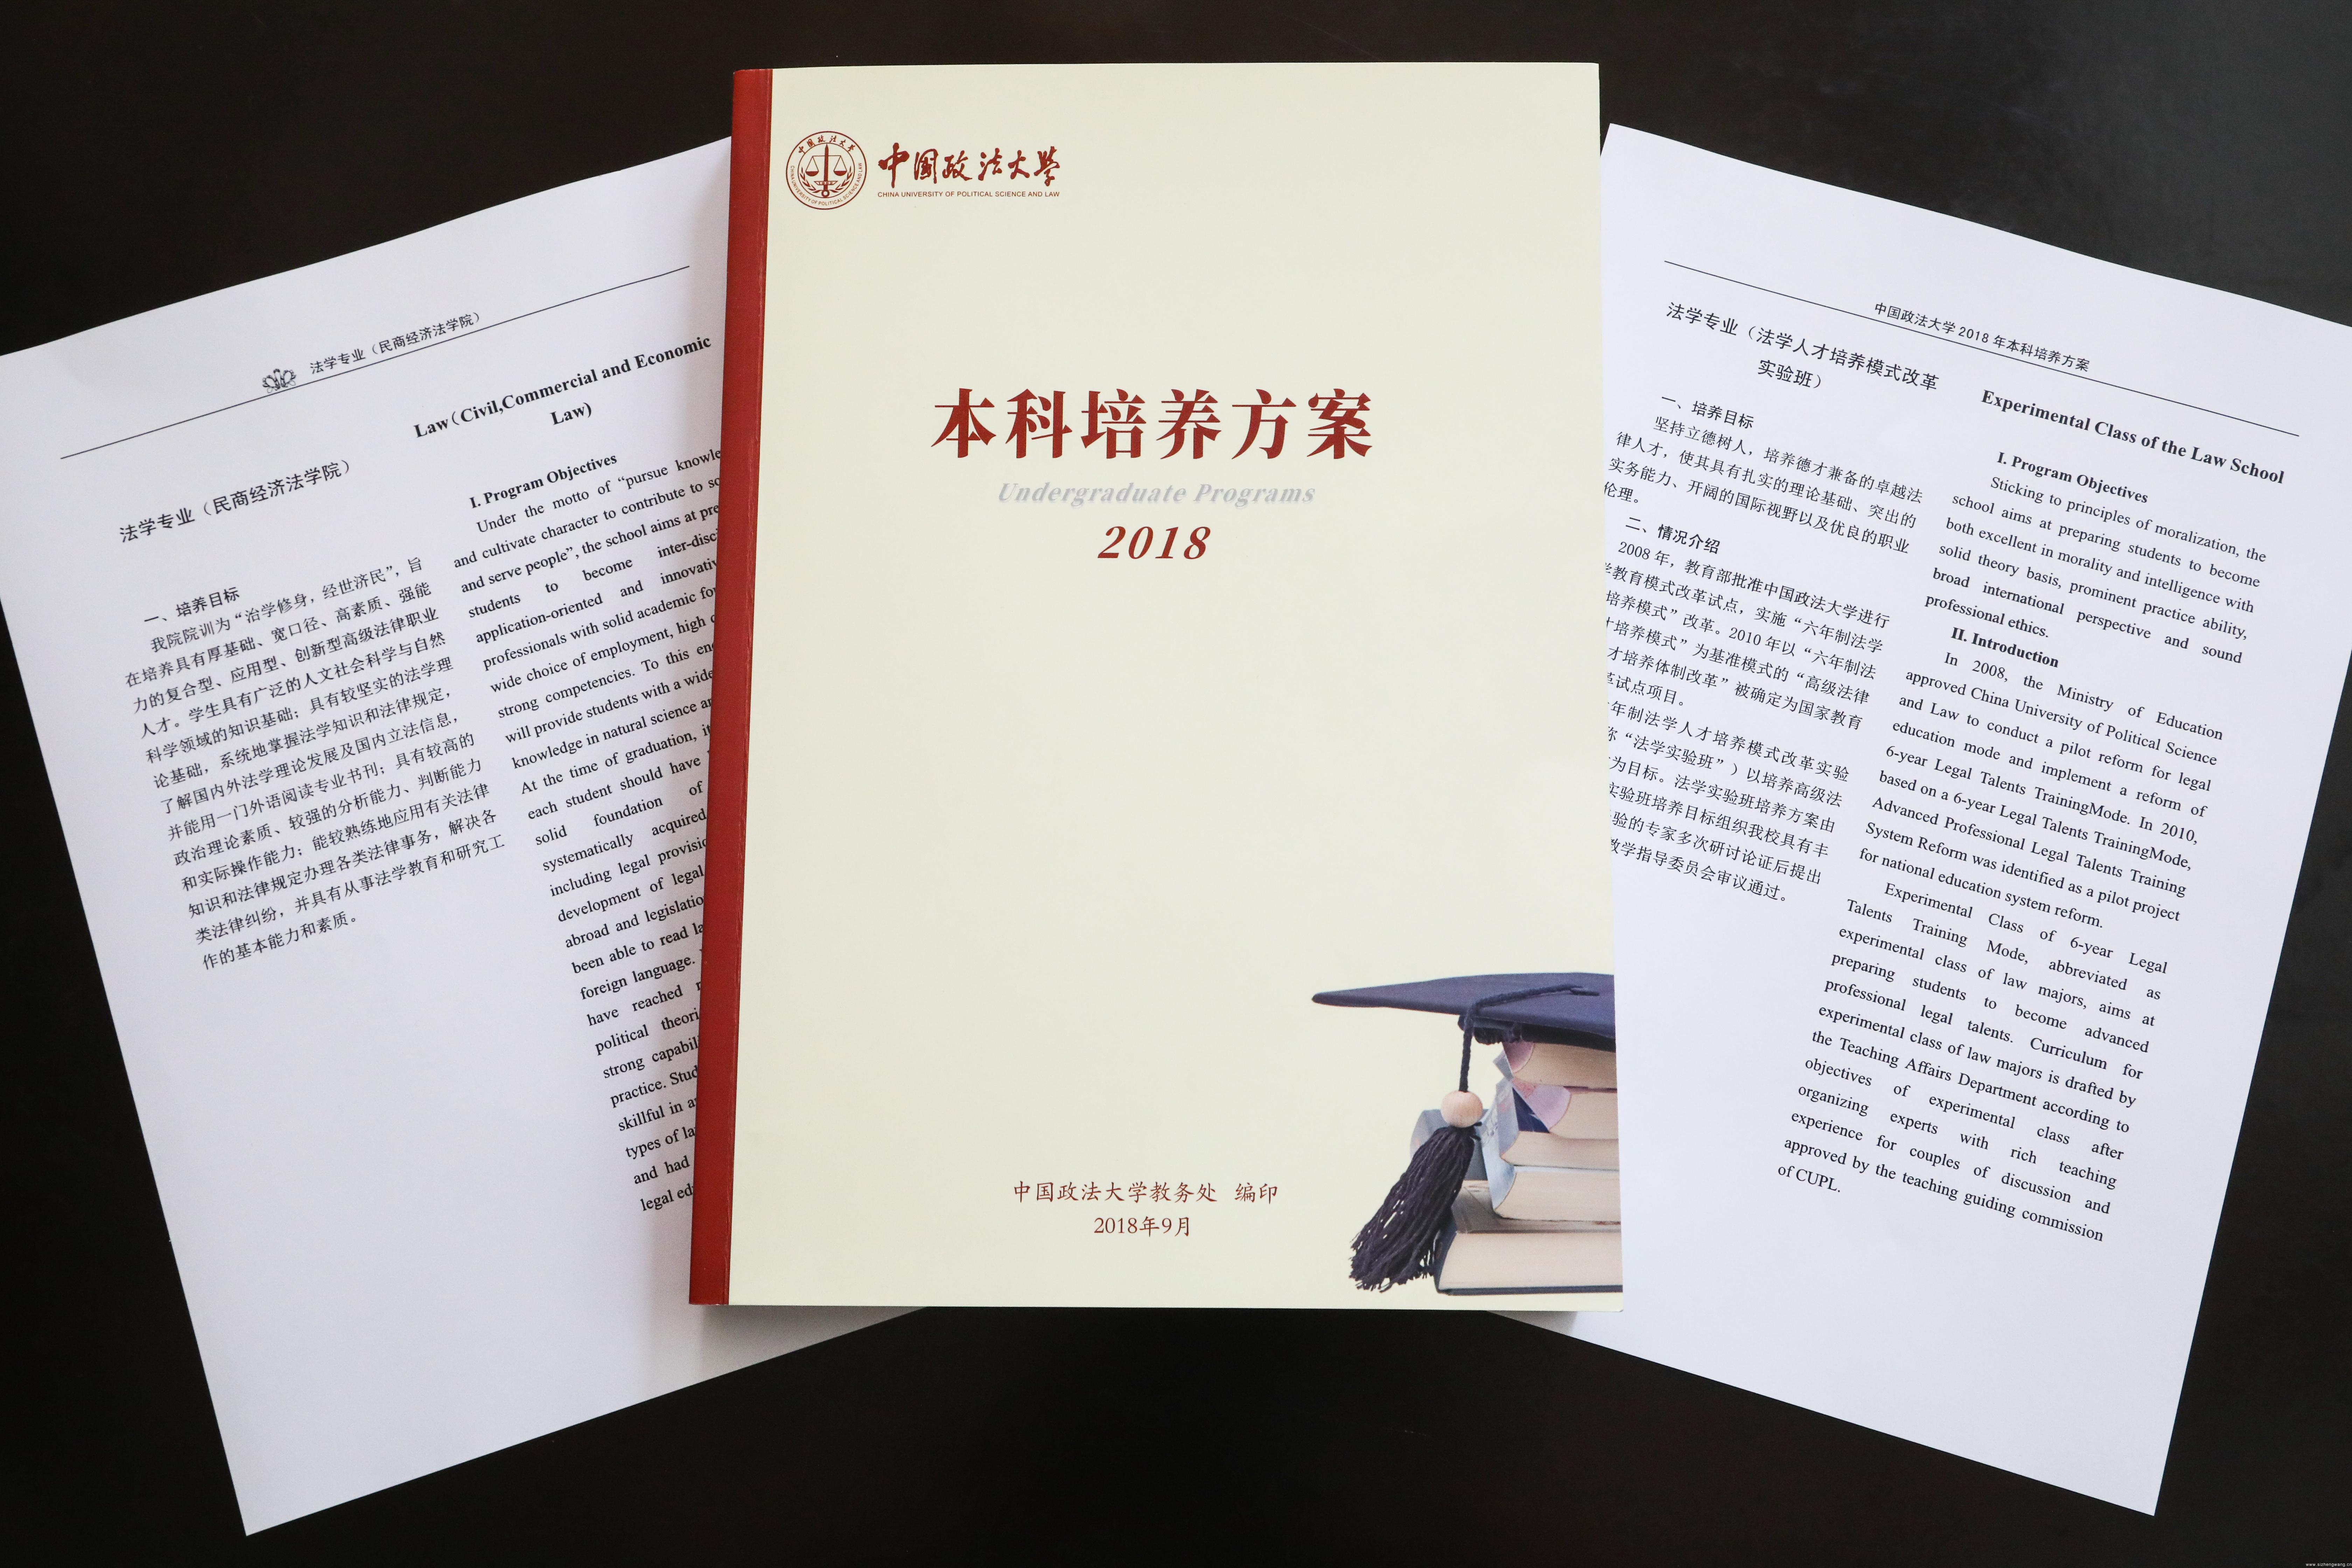 2017年5月3日，习近平总书记考察中国政法大学时发表重要讲话指出，法学教育要坚持立德树人、德法兼修，这为中国法学教育的发展提供了根本遵循。图为中国政法大学2018年本科培养方案。